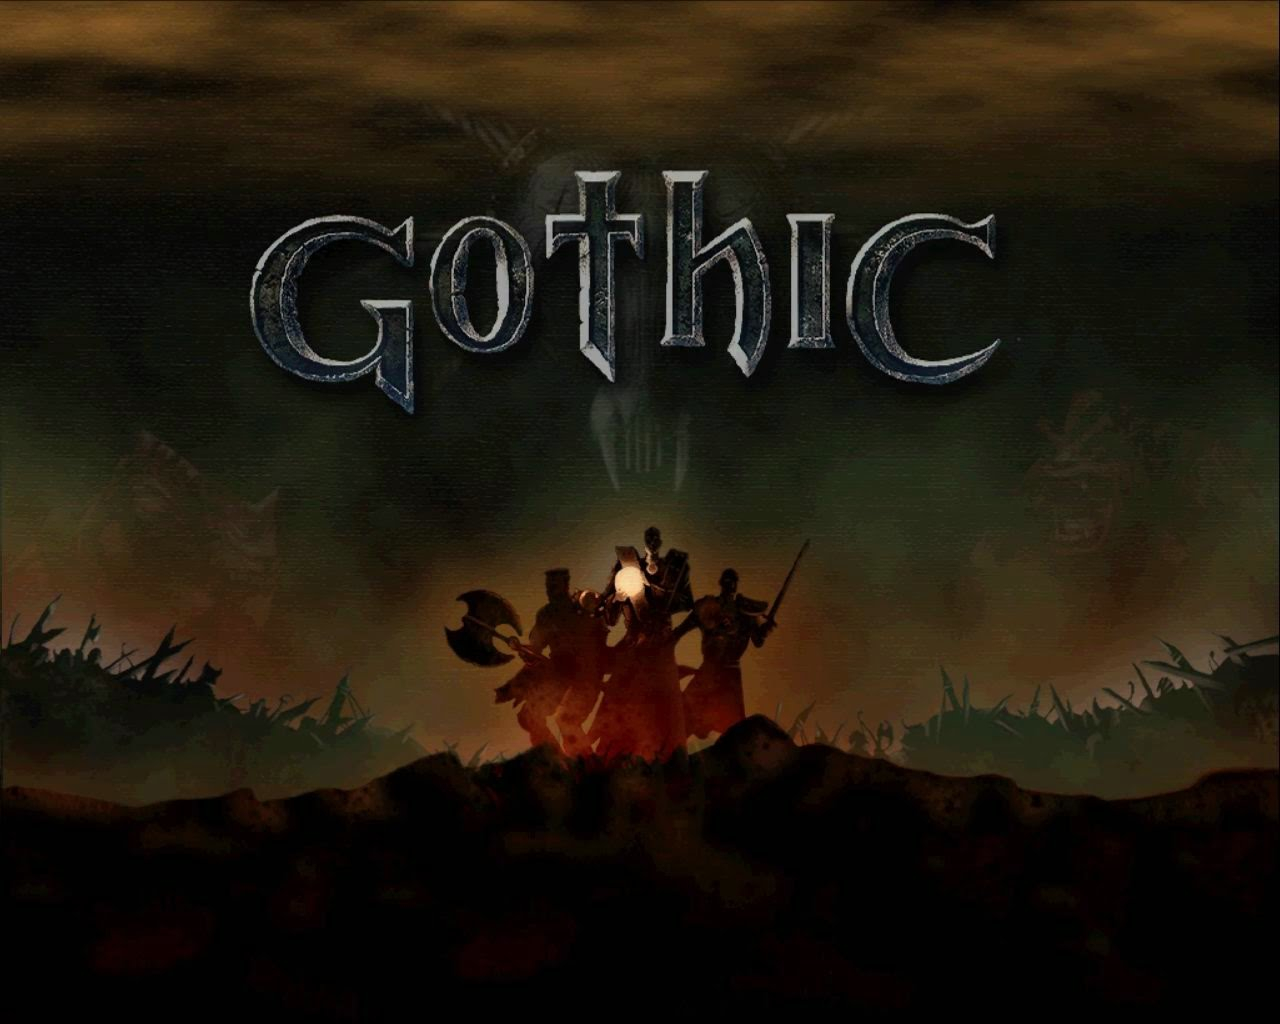 Новая статья: Gothic — как много в этом слове! Вспоминаем одну из наиболее самобытных ролевых серий